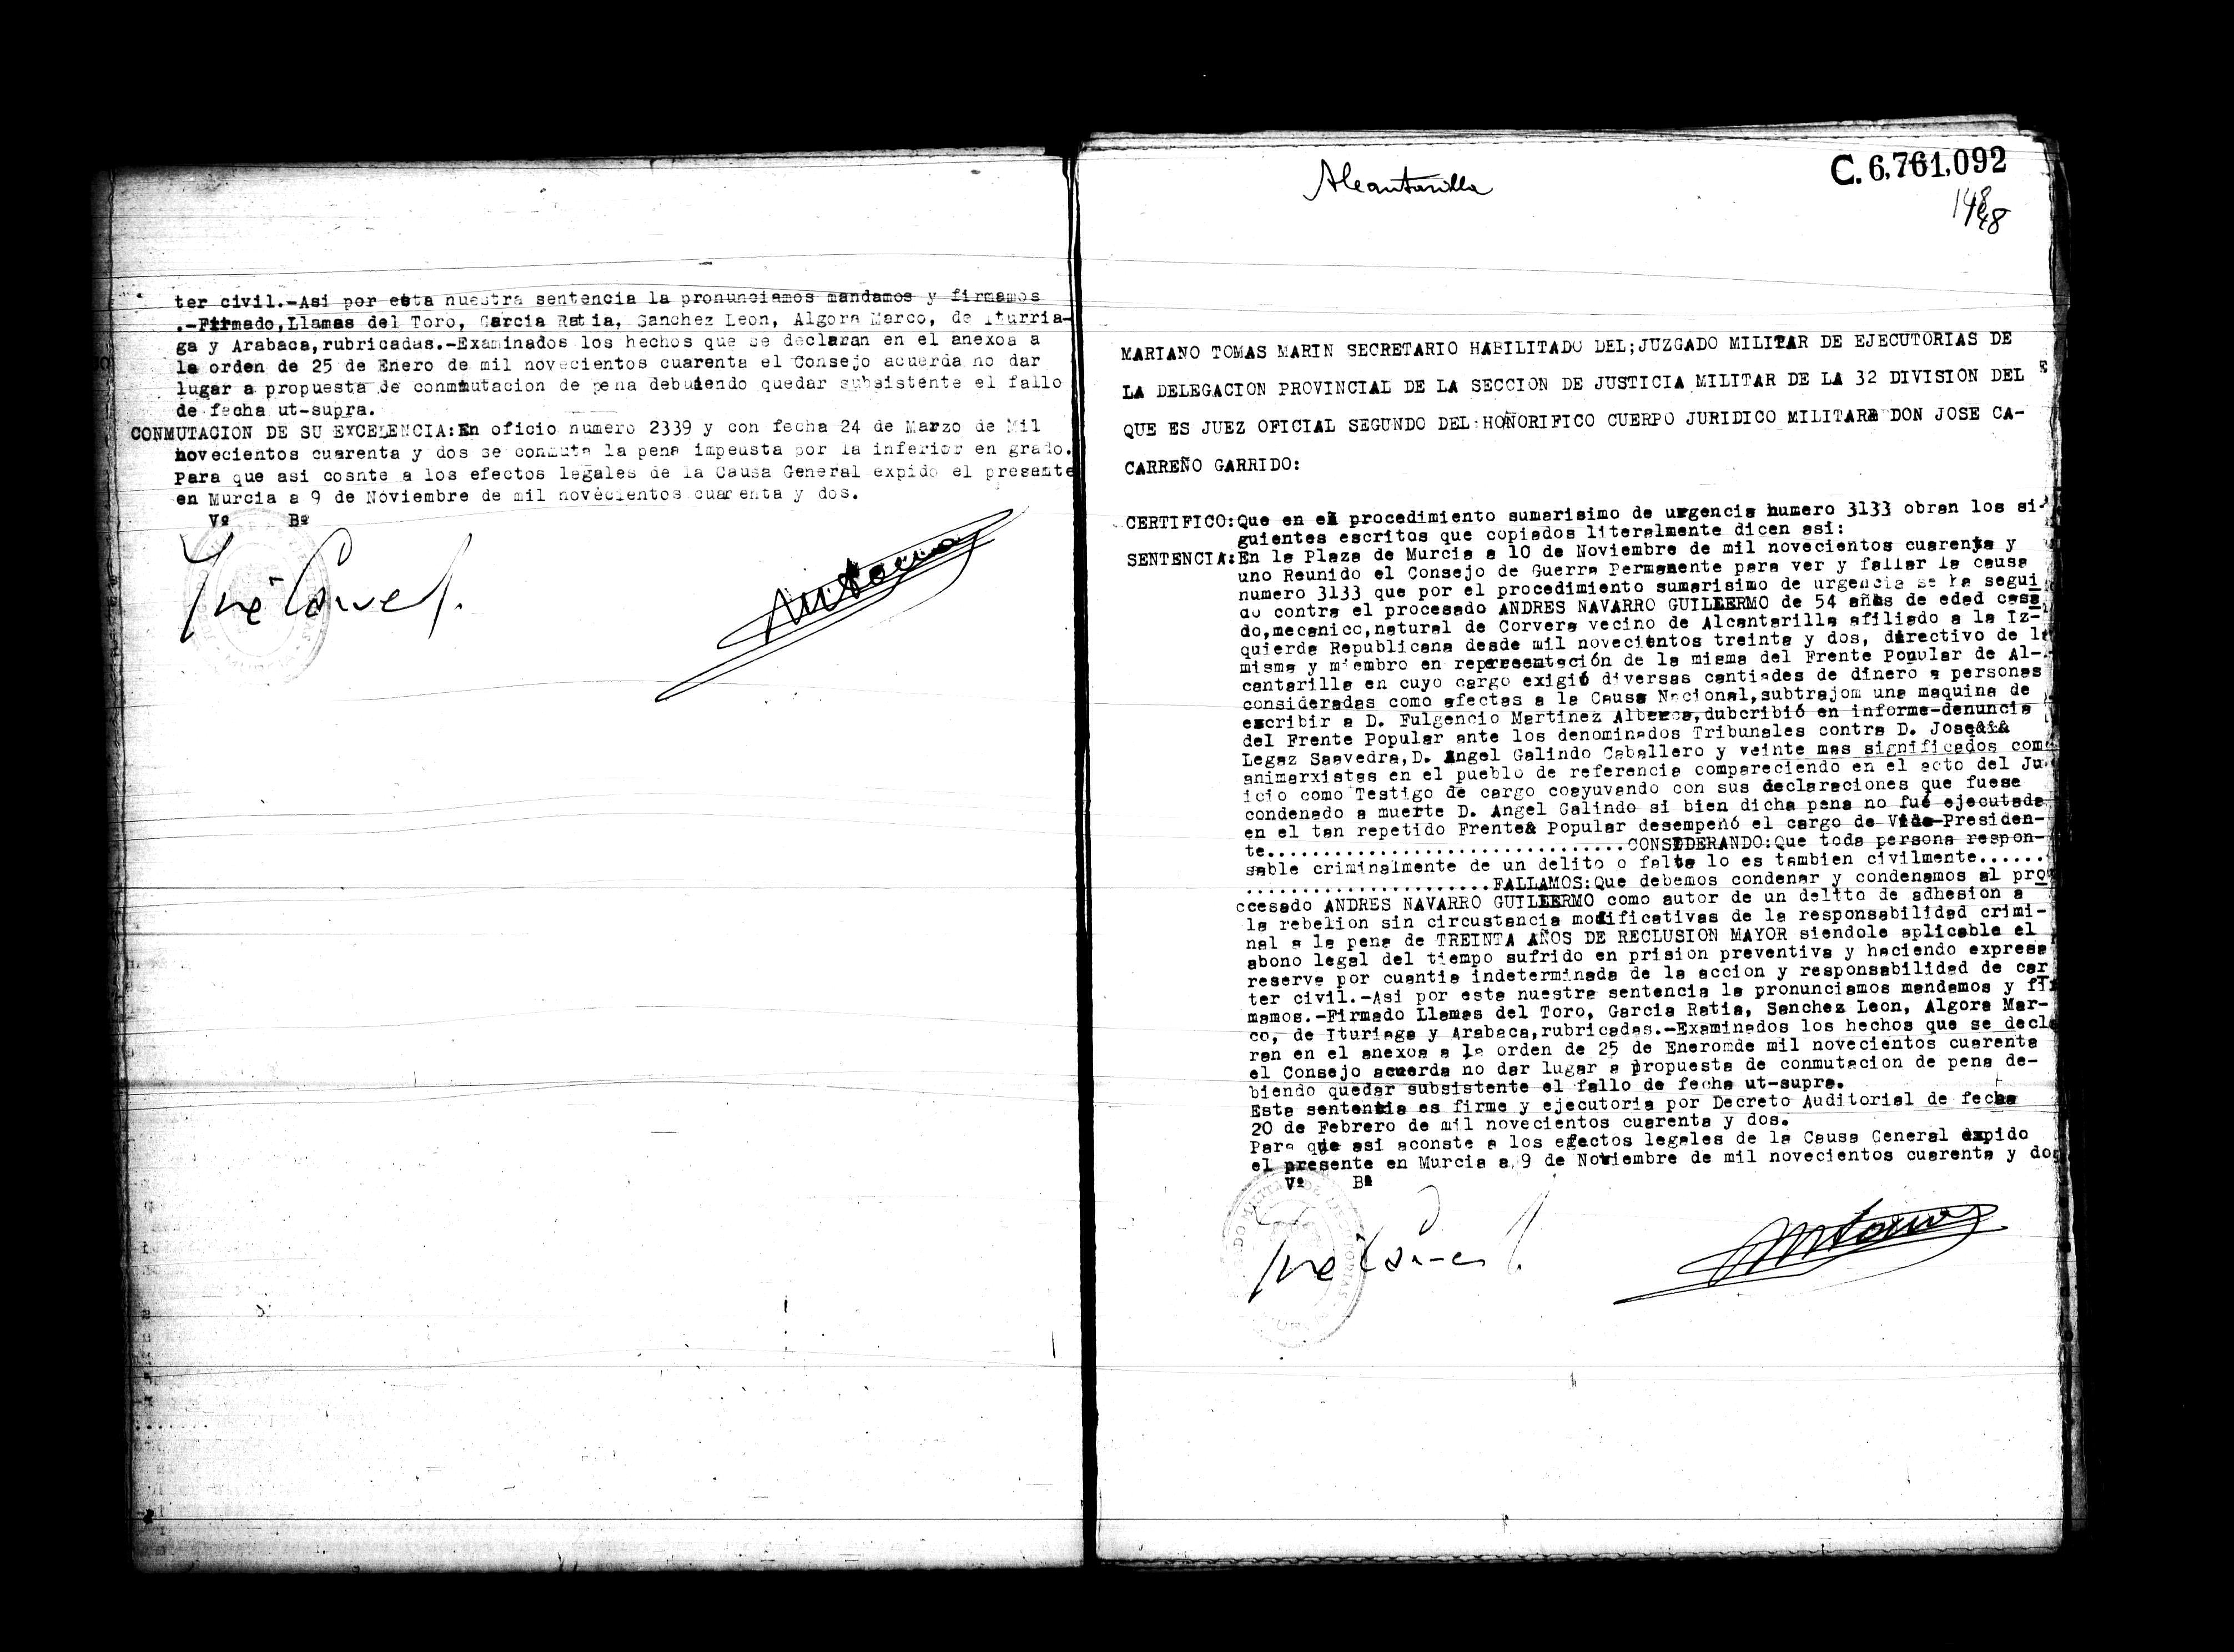 Certificado de la sentencia pronunciada contra Andrés Navarro Guillermo, causa 3133, el 10 de noviembre de 1941 en Murcia.